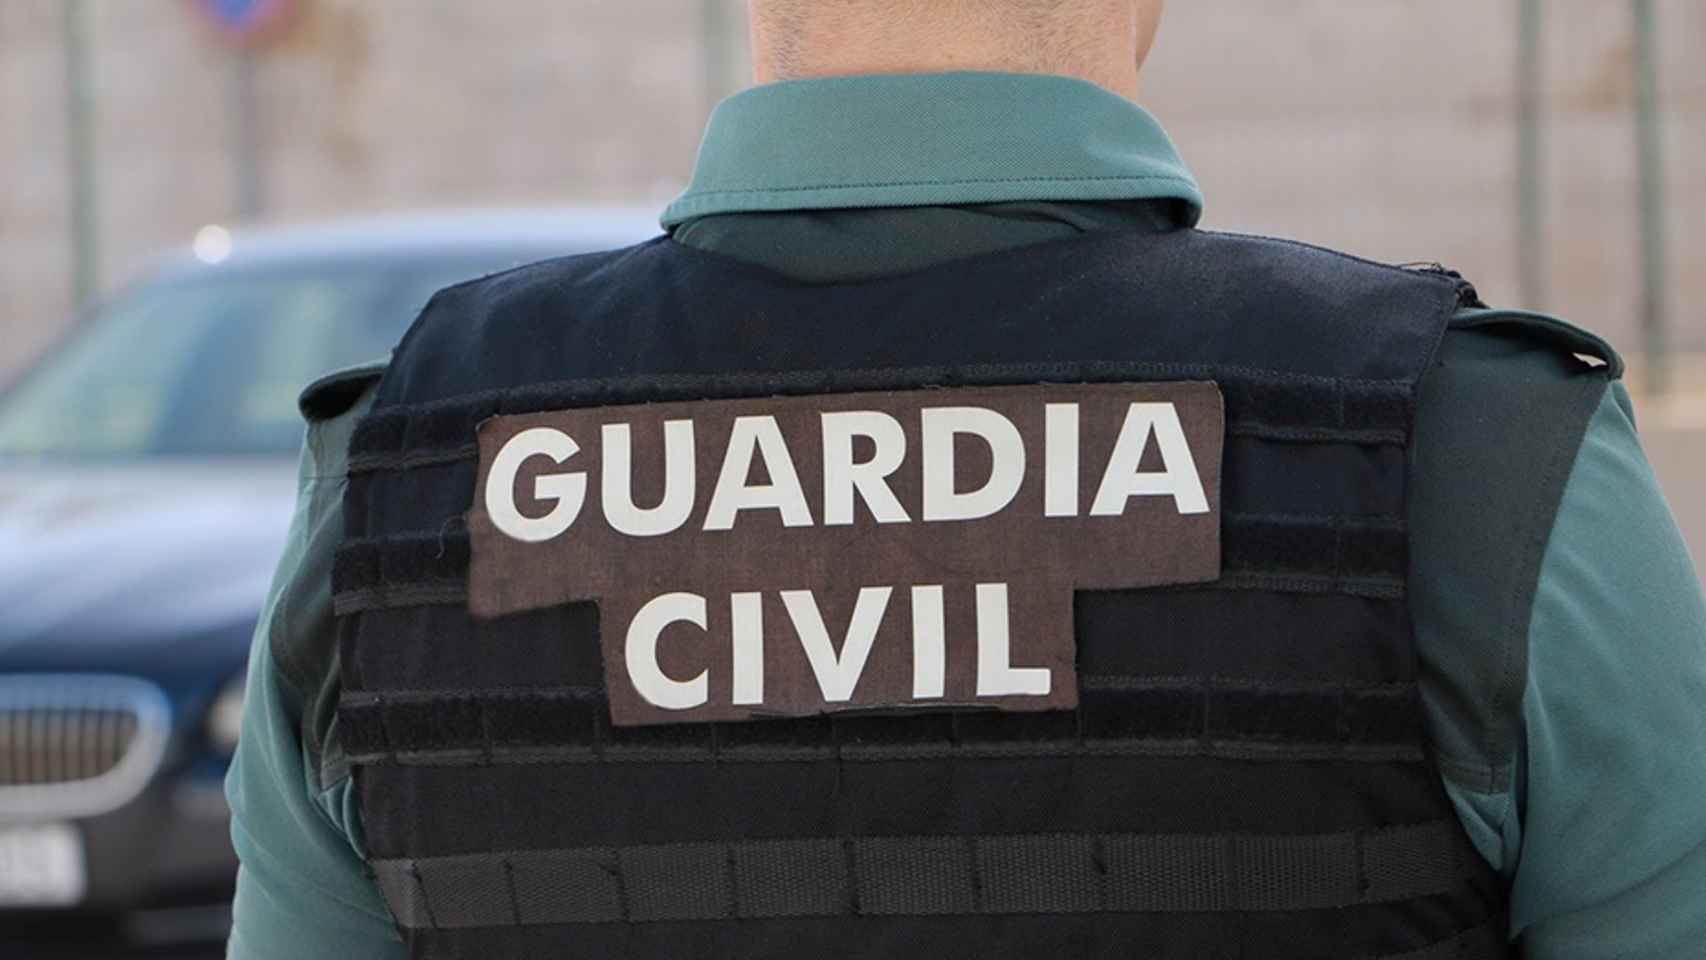 Un agente de la Guardia Civil, de espaldas, en una imagen de archivo